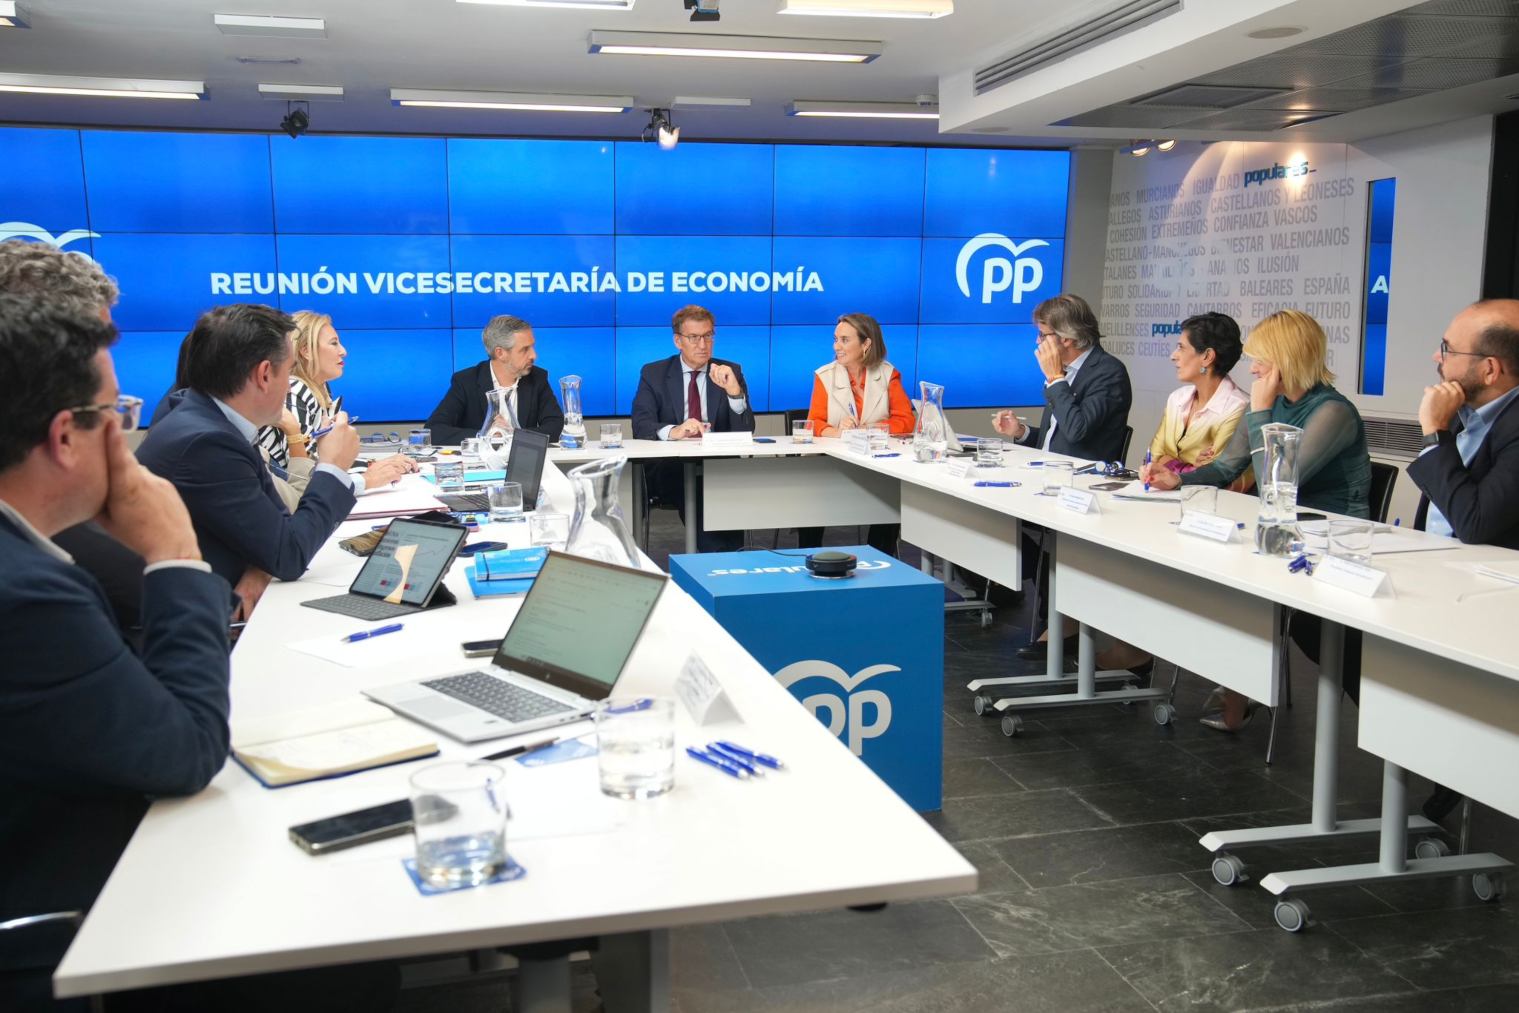 Feijóo preside la reunión de la vicesecretaría de Economía del PP.